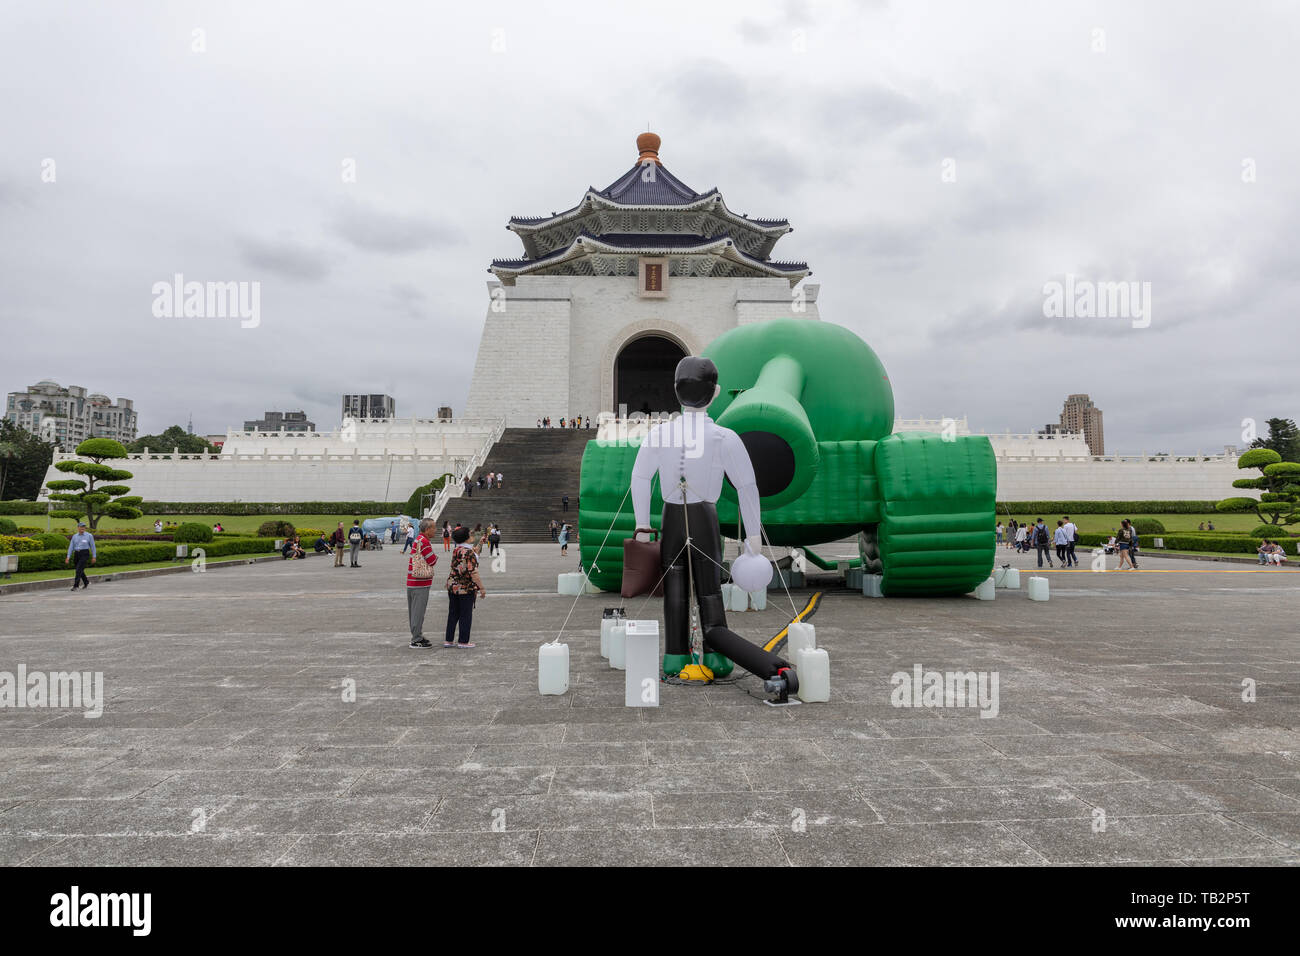 Un réservoir gonflable homme est affichée à Chiang Kai-shek Memorial Hall à Taipei pour marquer le 30e anniversaire de la 4 juin 1989 massacre de la place Tiananmen. Banque D'Images